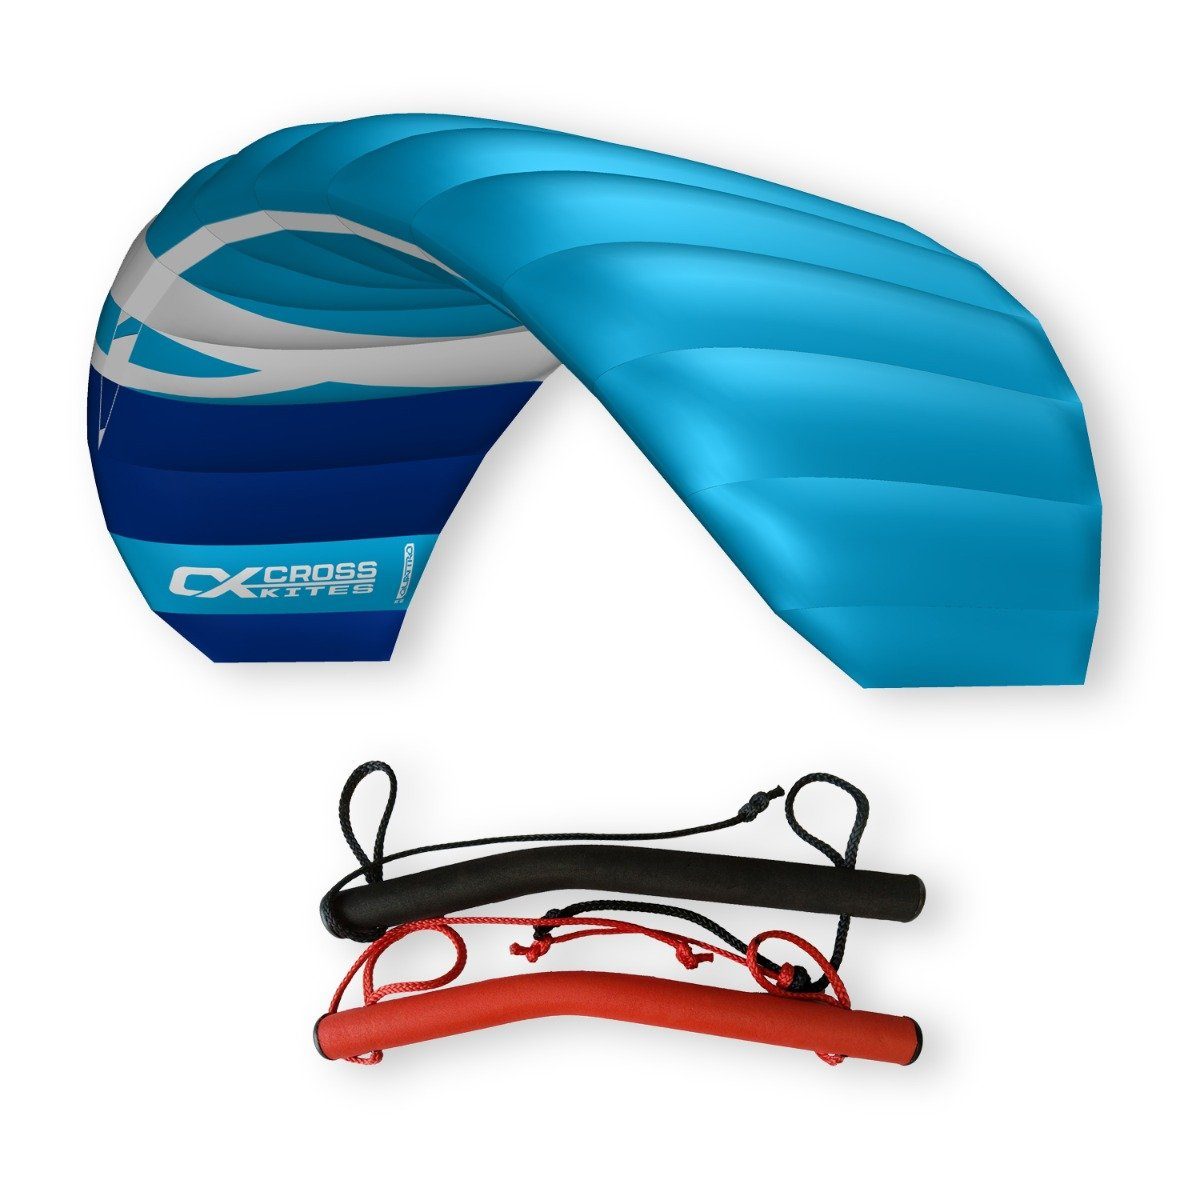 CrossKites Flug-Drache CrossKites Lenkmatte Quattro 2.5 Blue mit Handles, Handles, Leinen, 2 Kitekiller